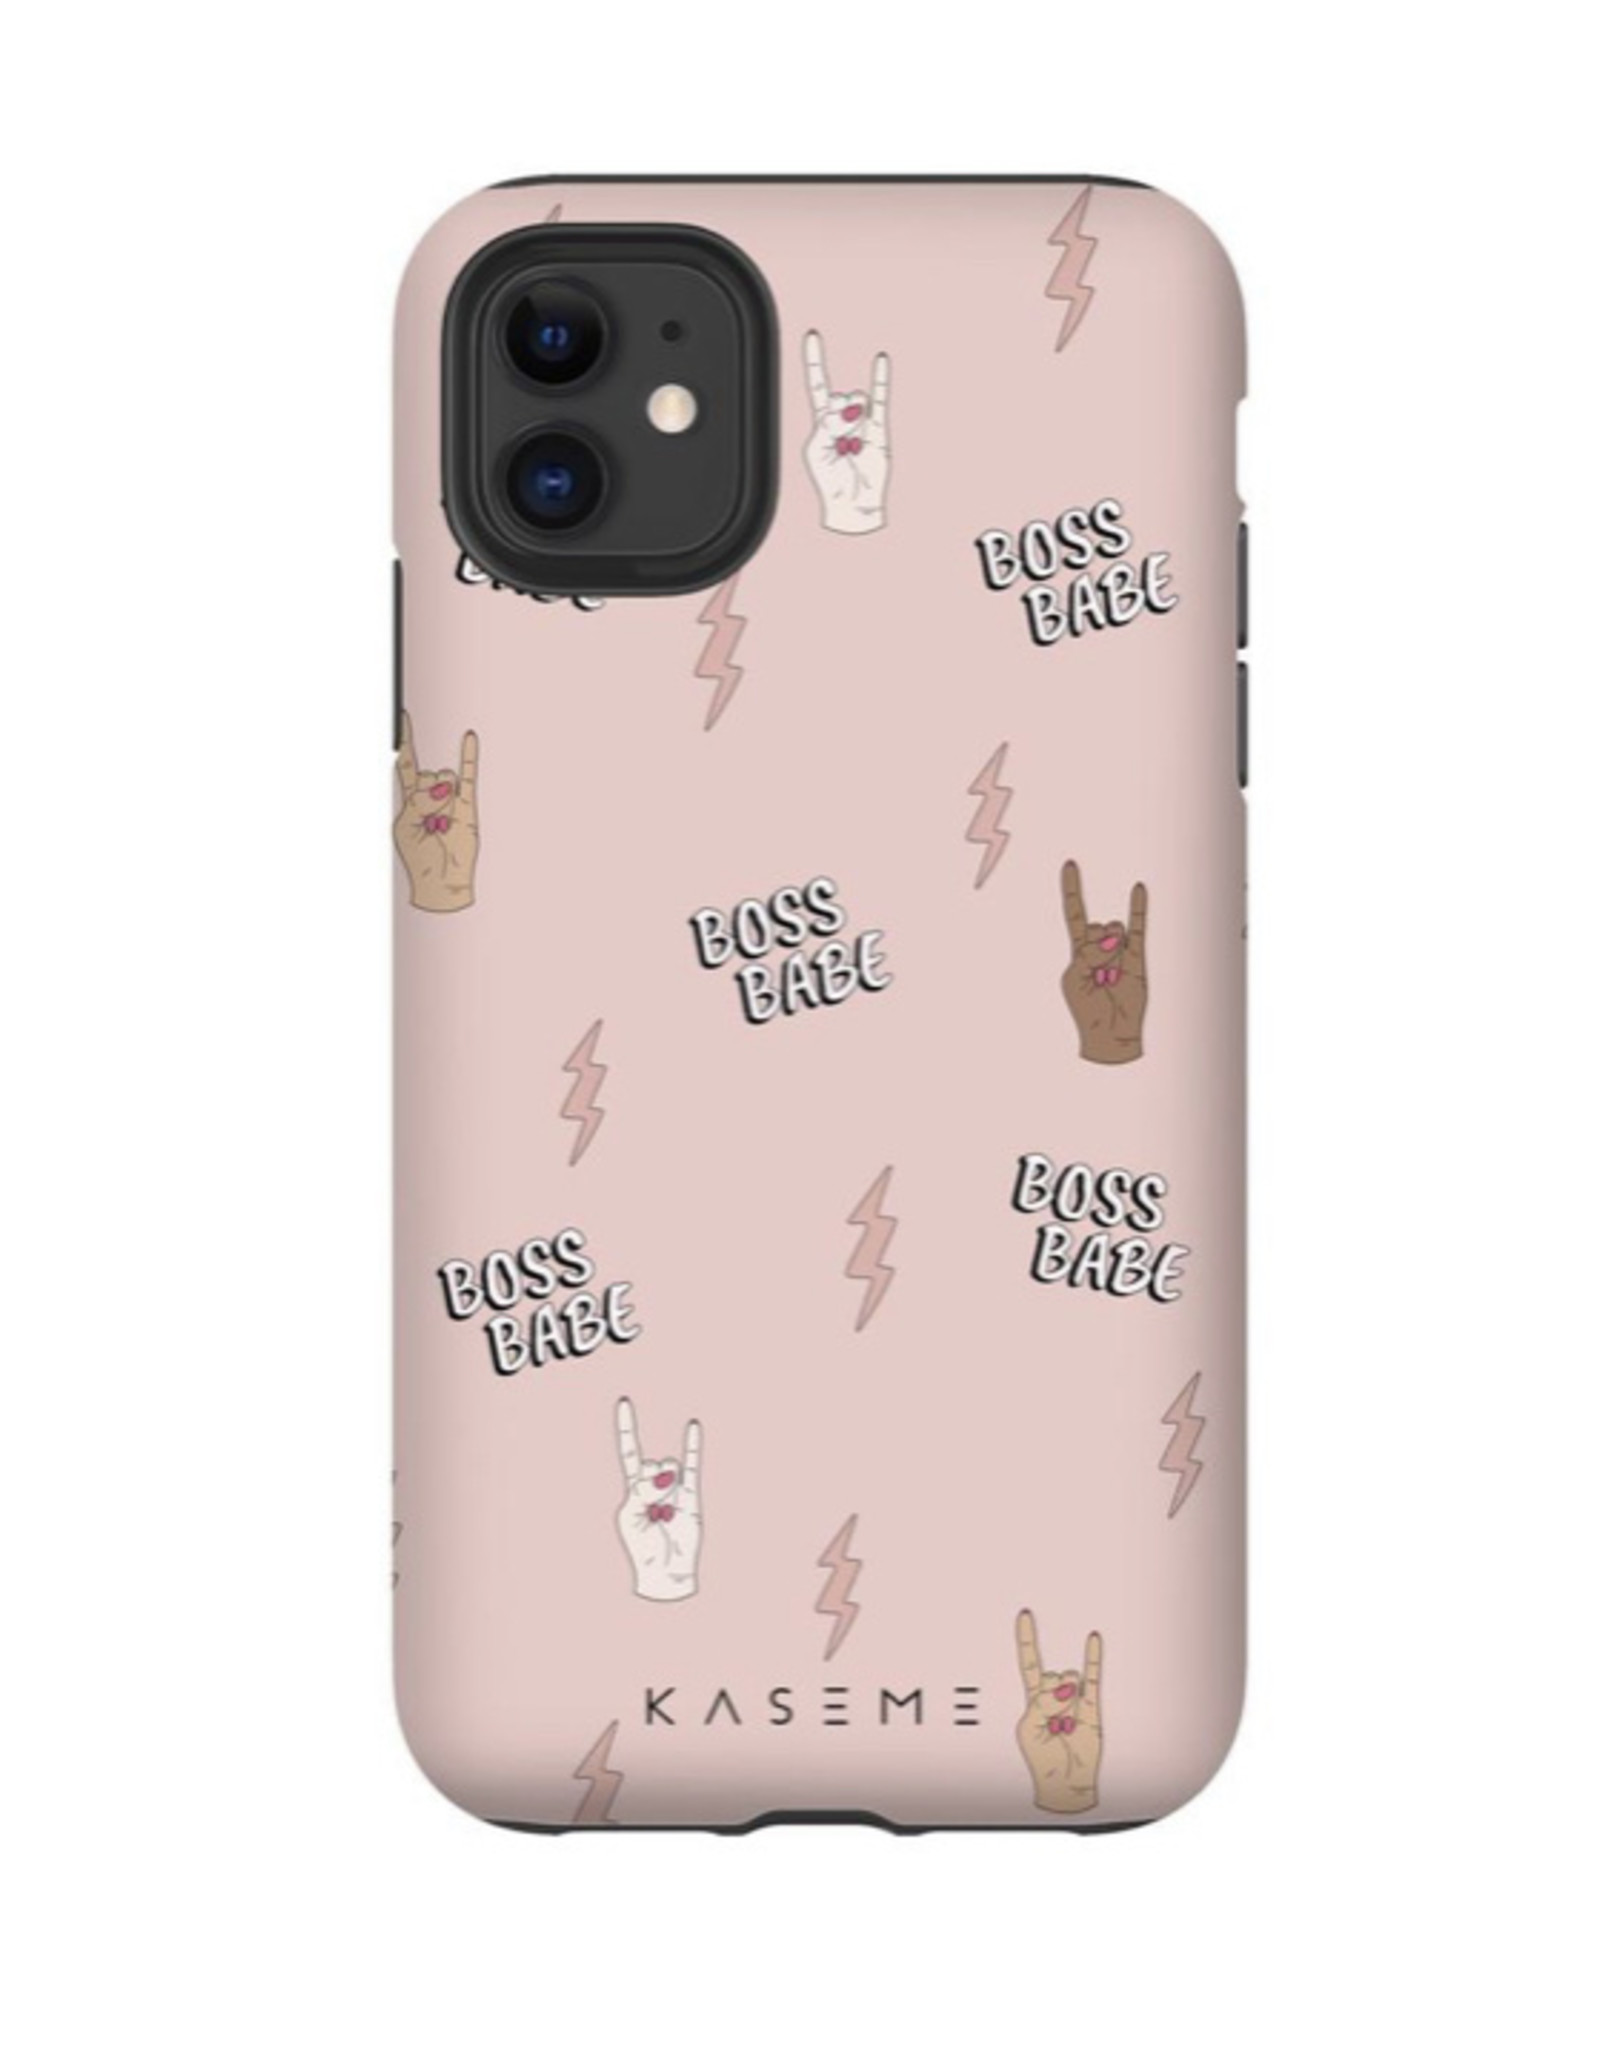 KaseMe Boss Babe, IPhone 11/XR Tough